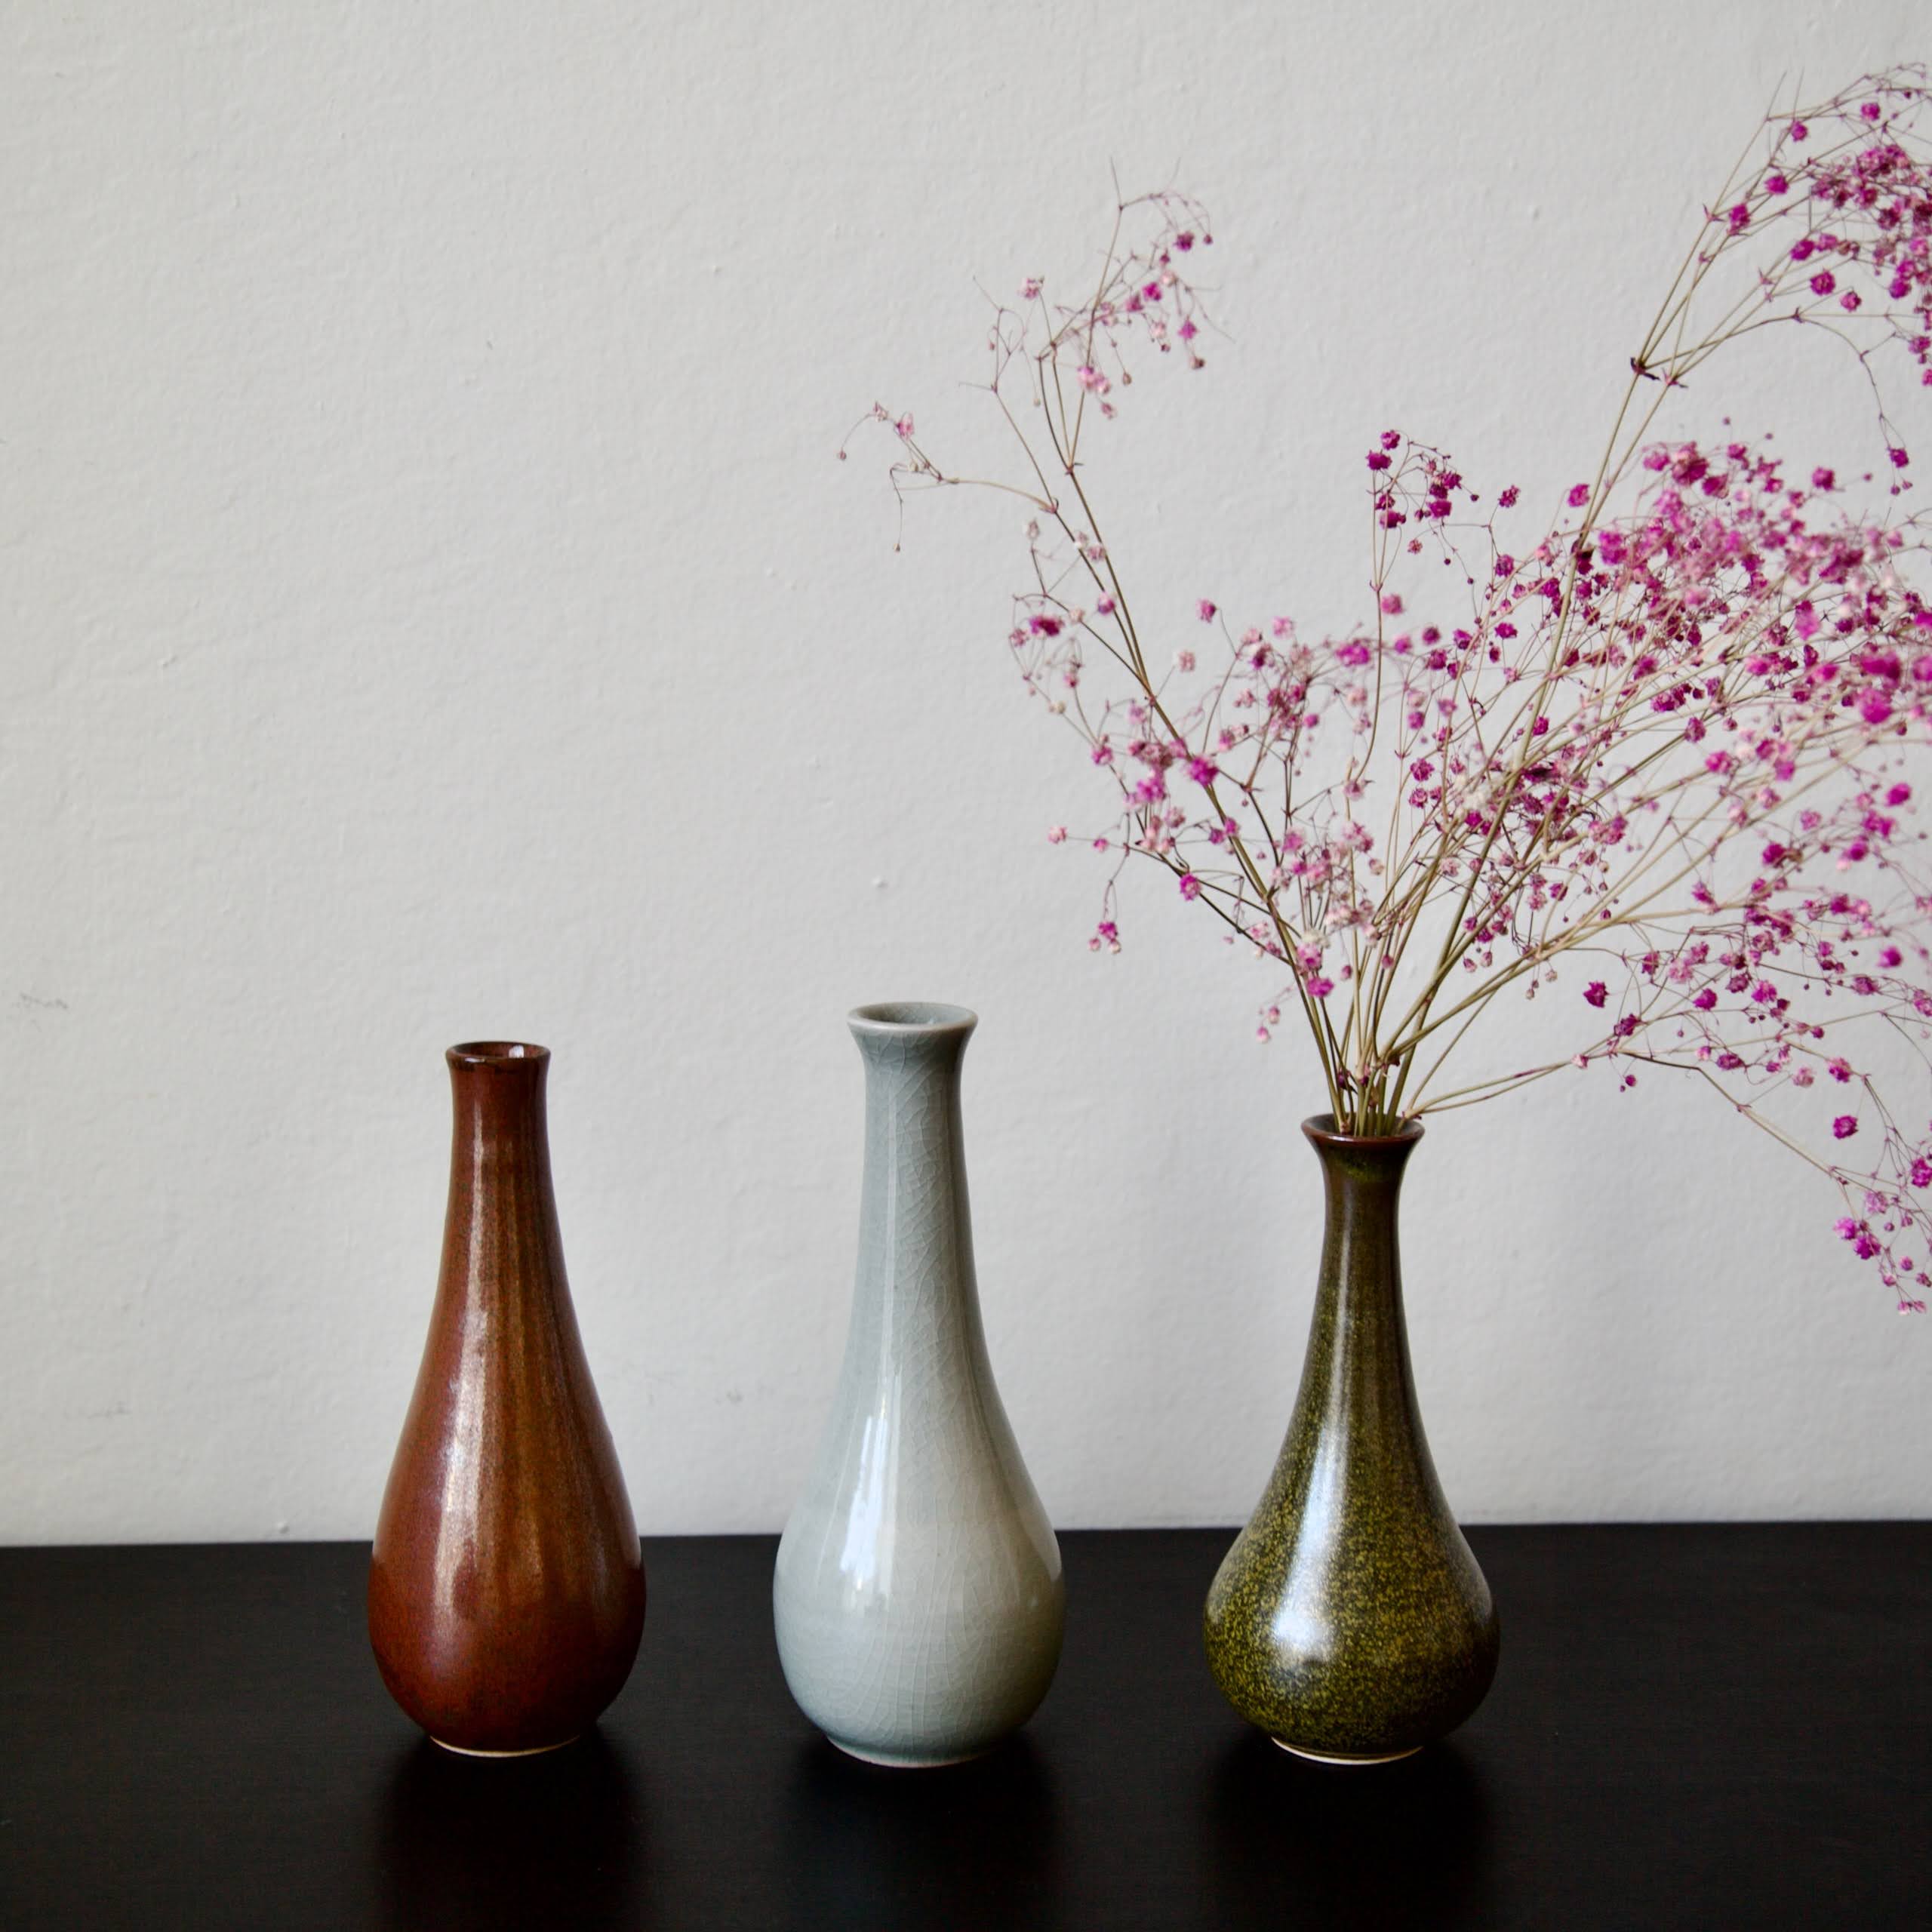 Narrow vases, 2 pounds